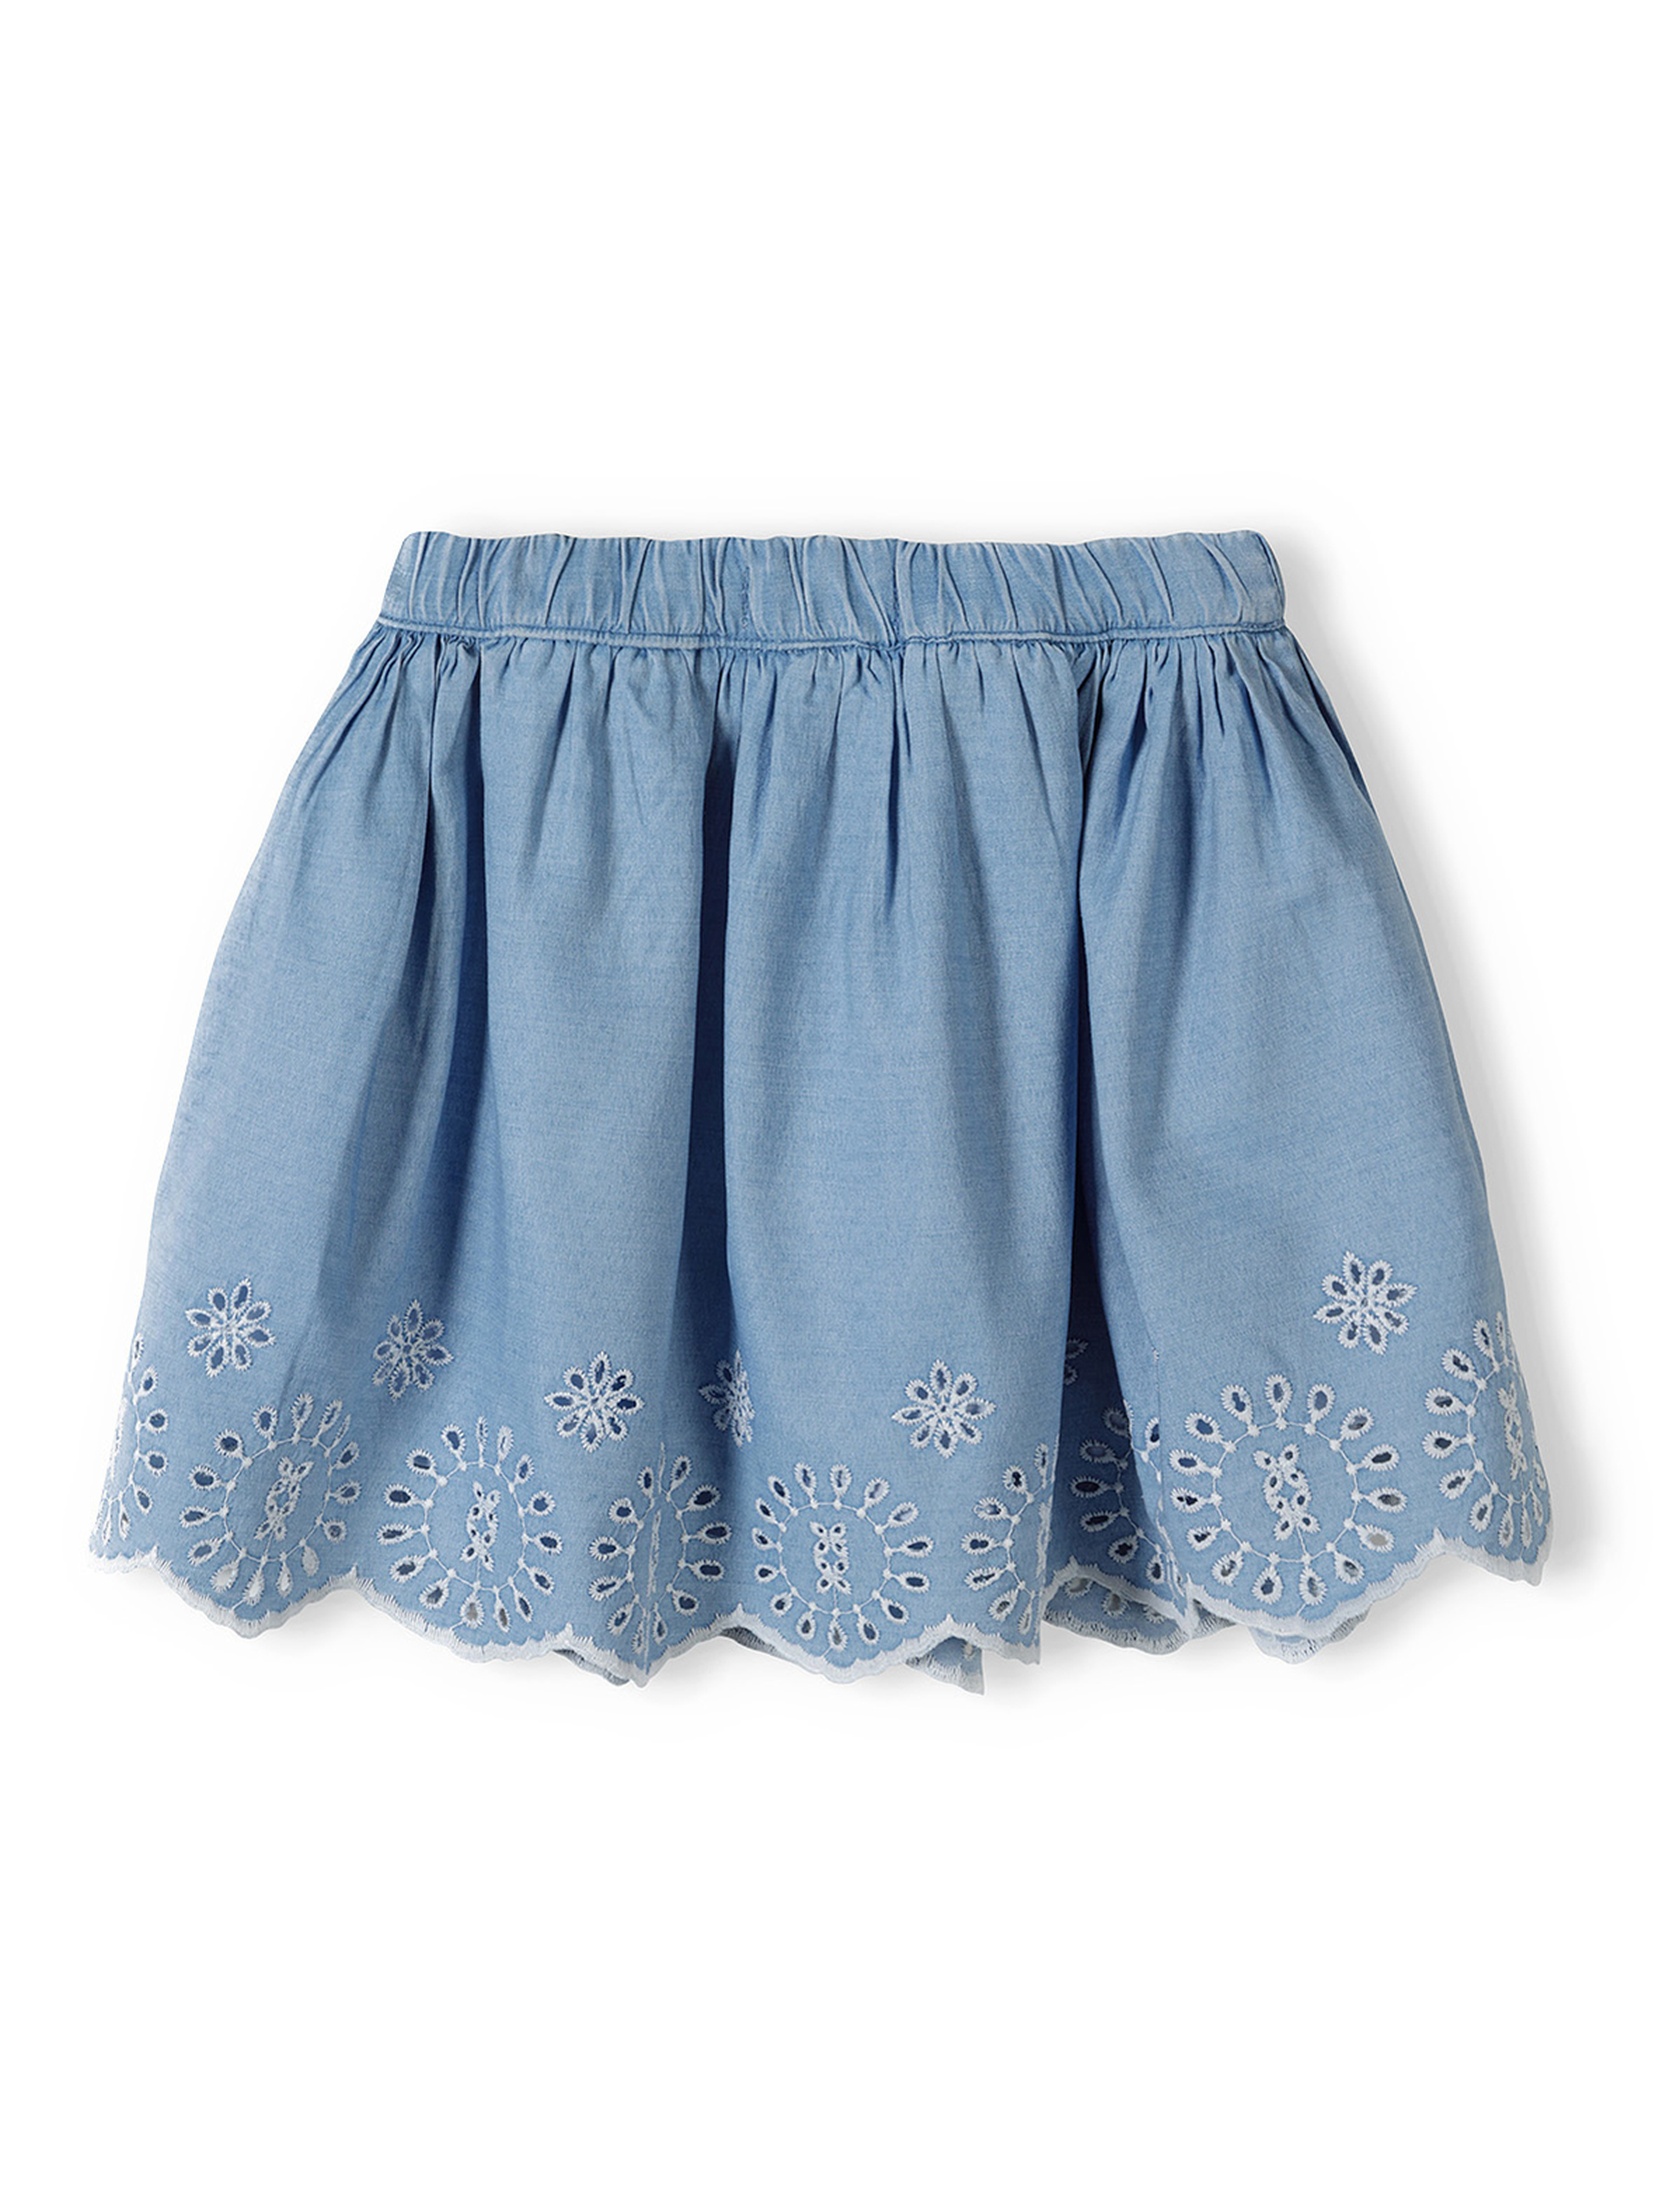 Niebieska spódniczka krótka niemowlęca haftowana